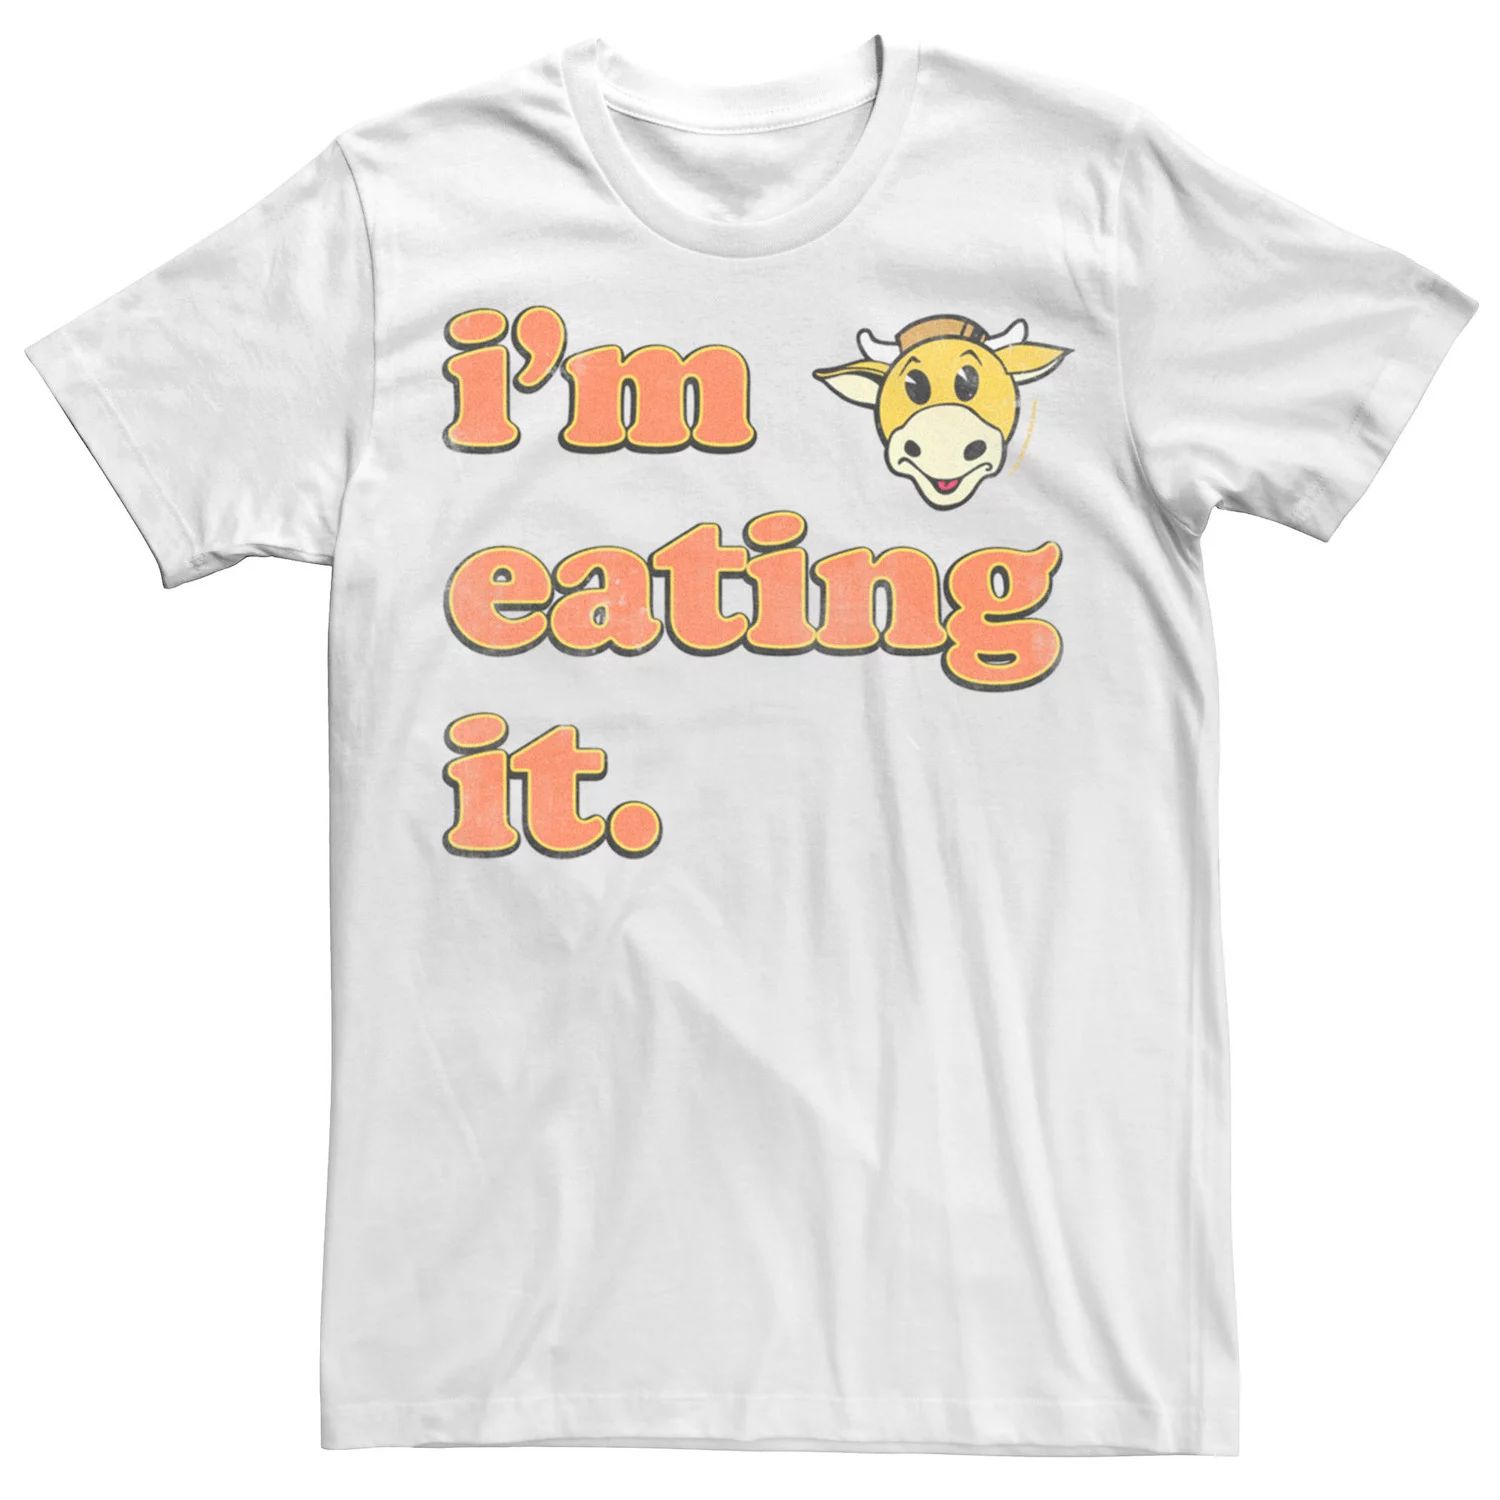 Мужская футболка с логотипом Jay And Silent Bob Mooby's I'm Eat It Licensed Character